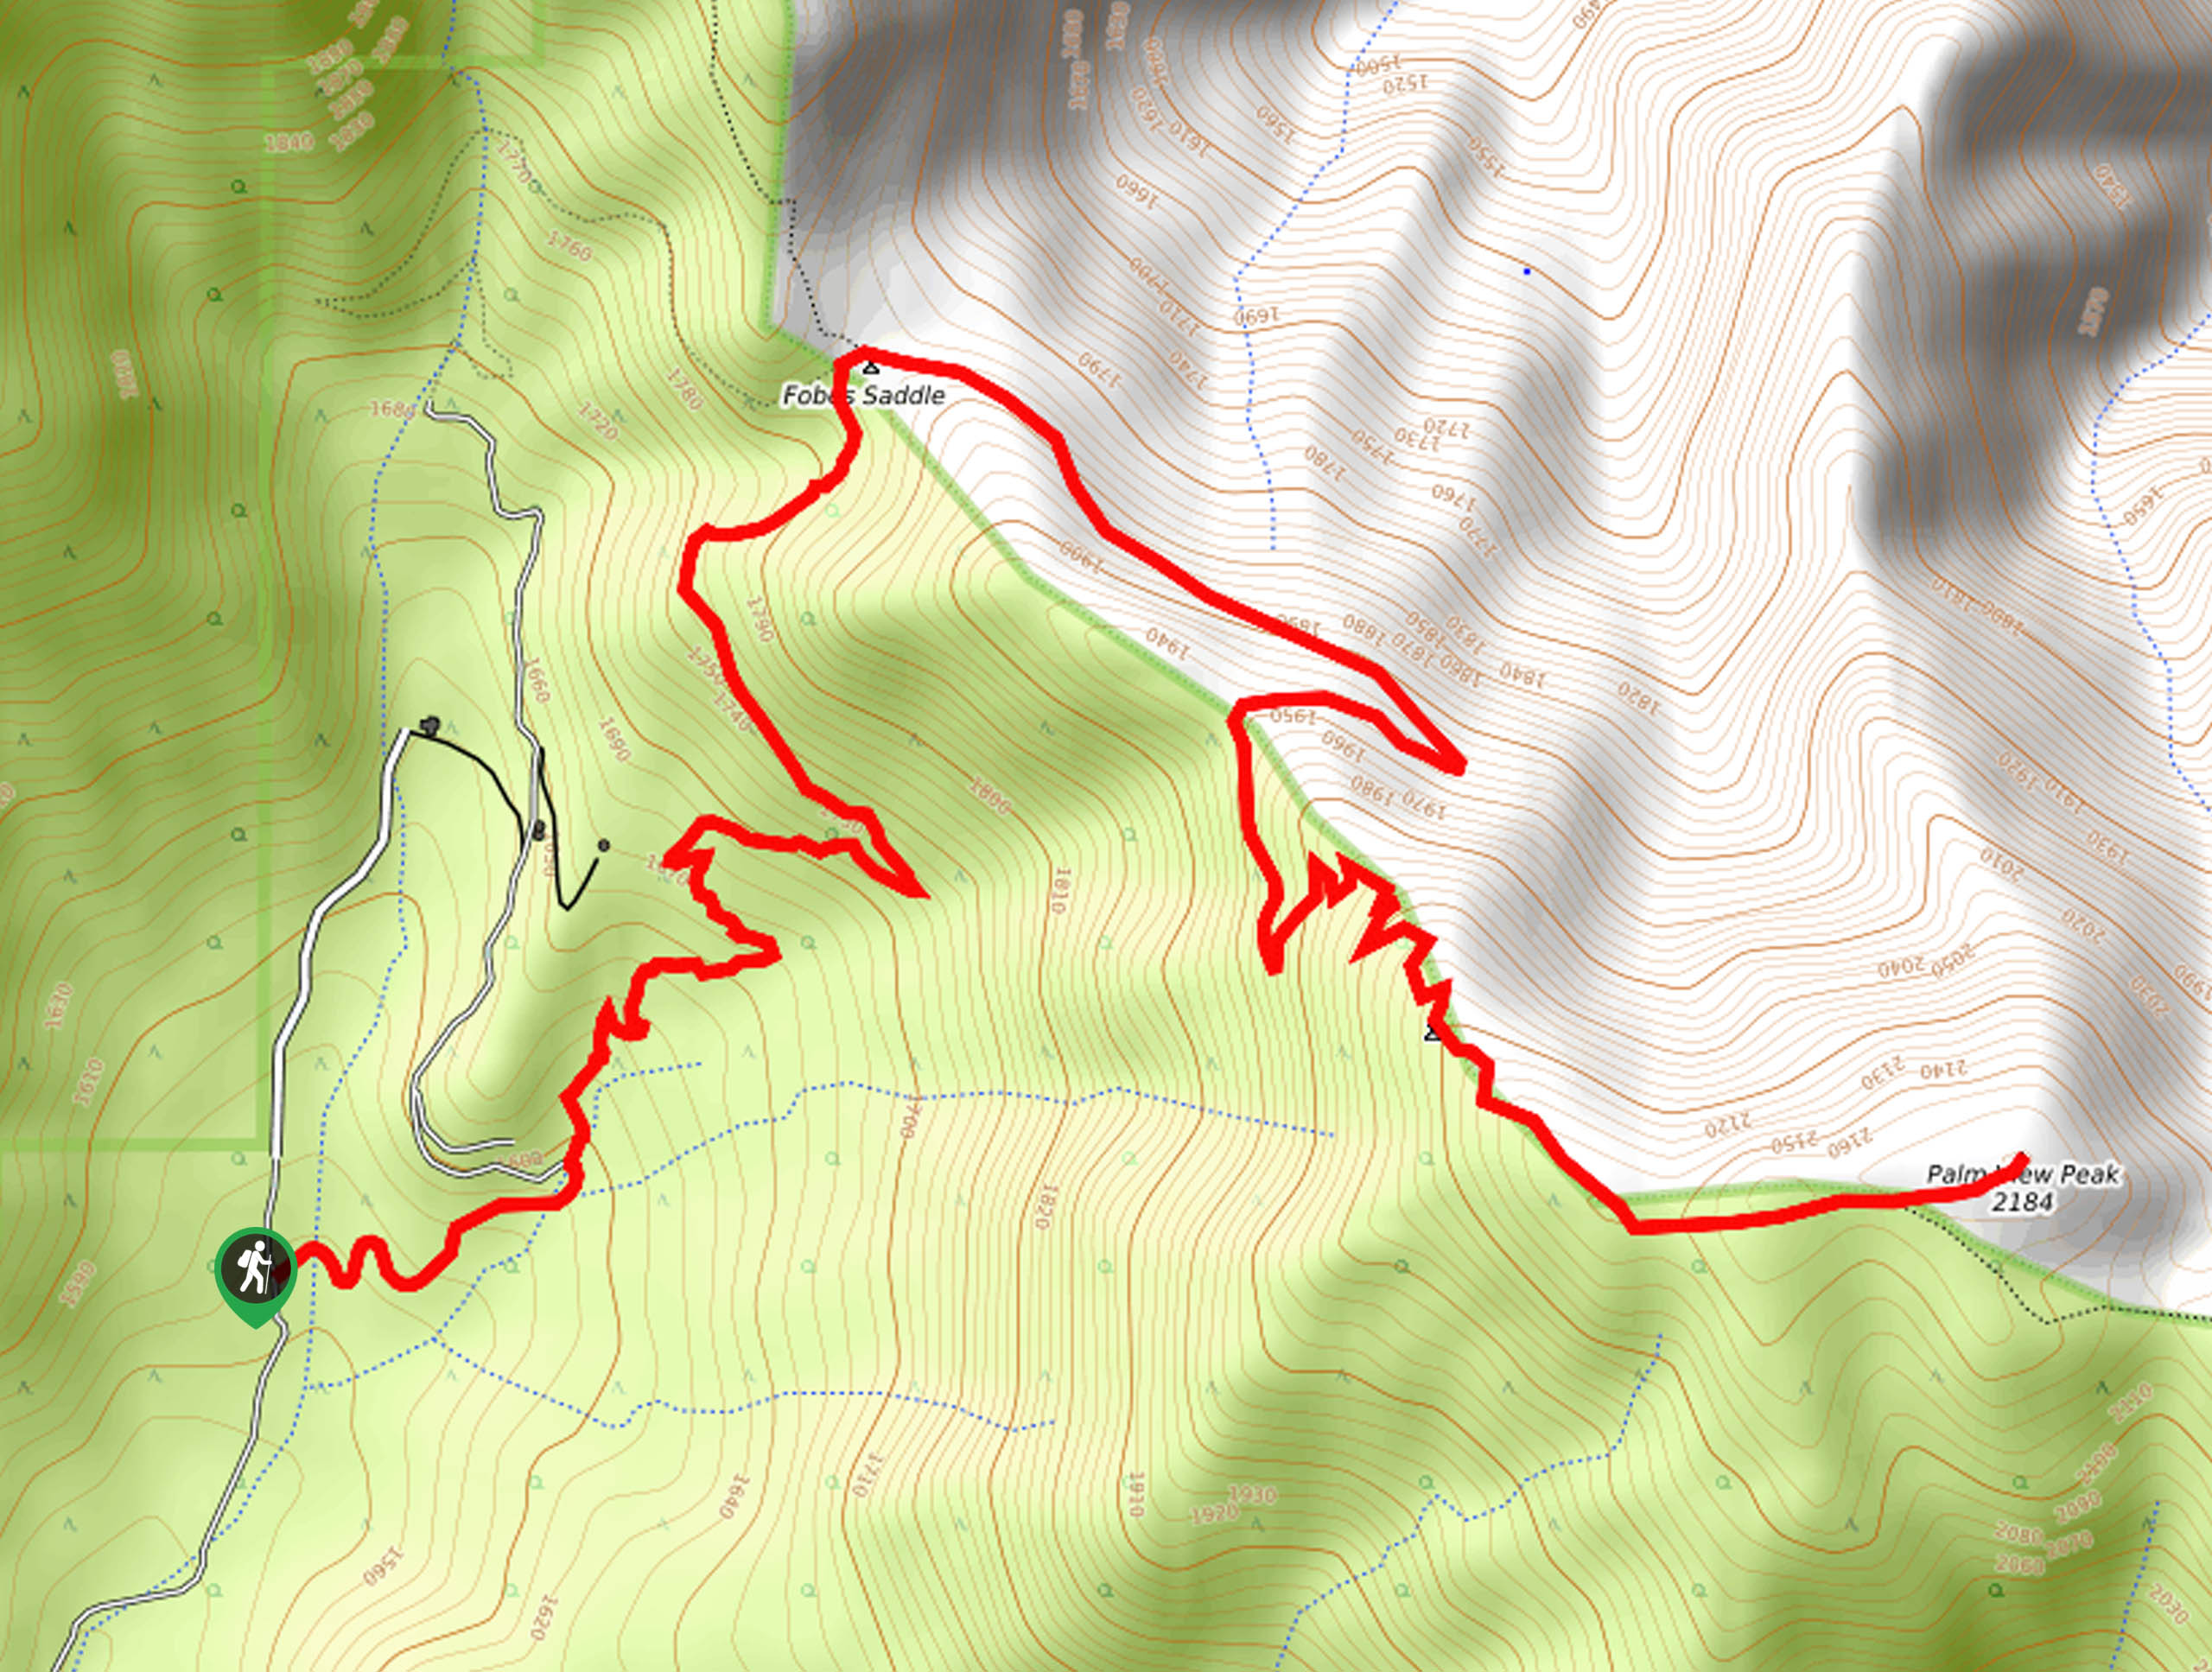 Palm View Peak Trail Map